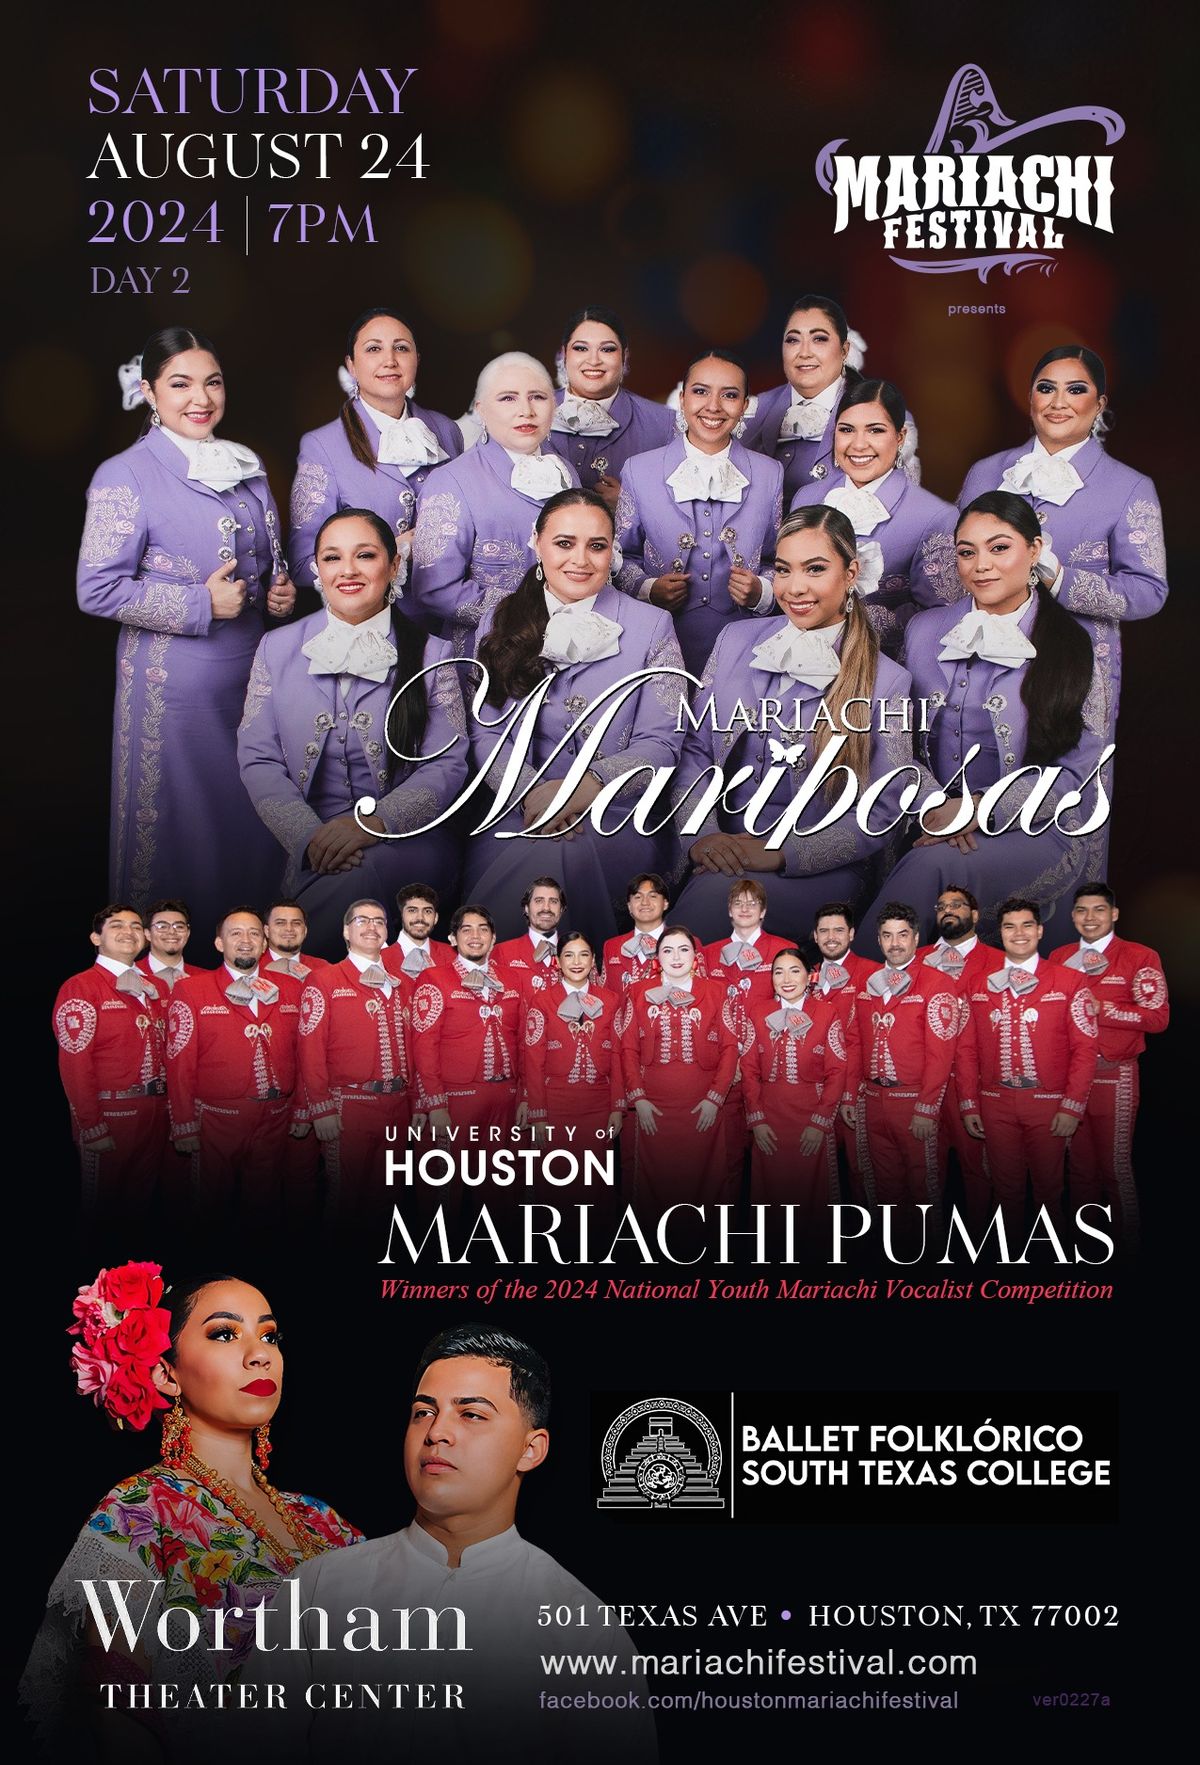 5th Annual Mariachi Festival - Mariachi Mariposas & UH Mariachi Pumas